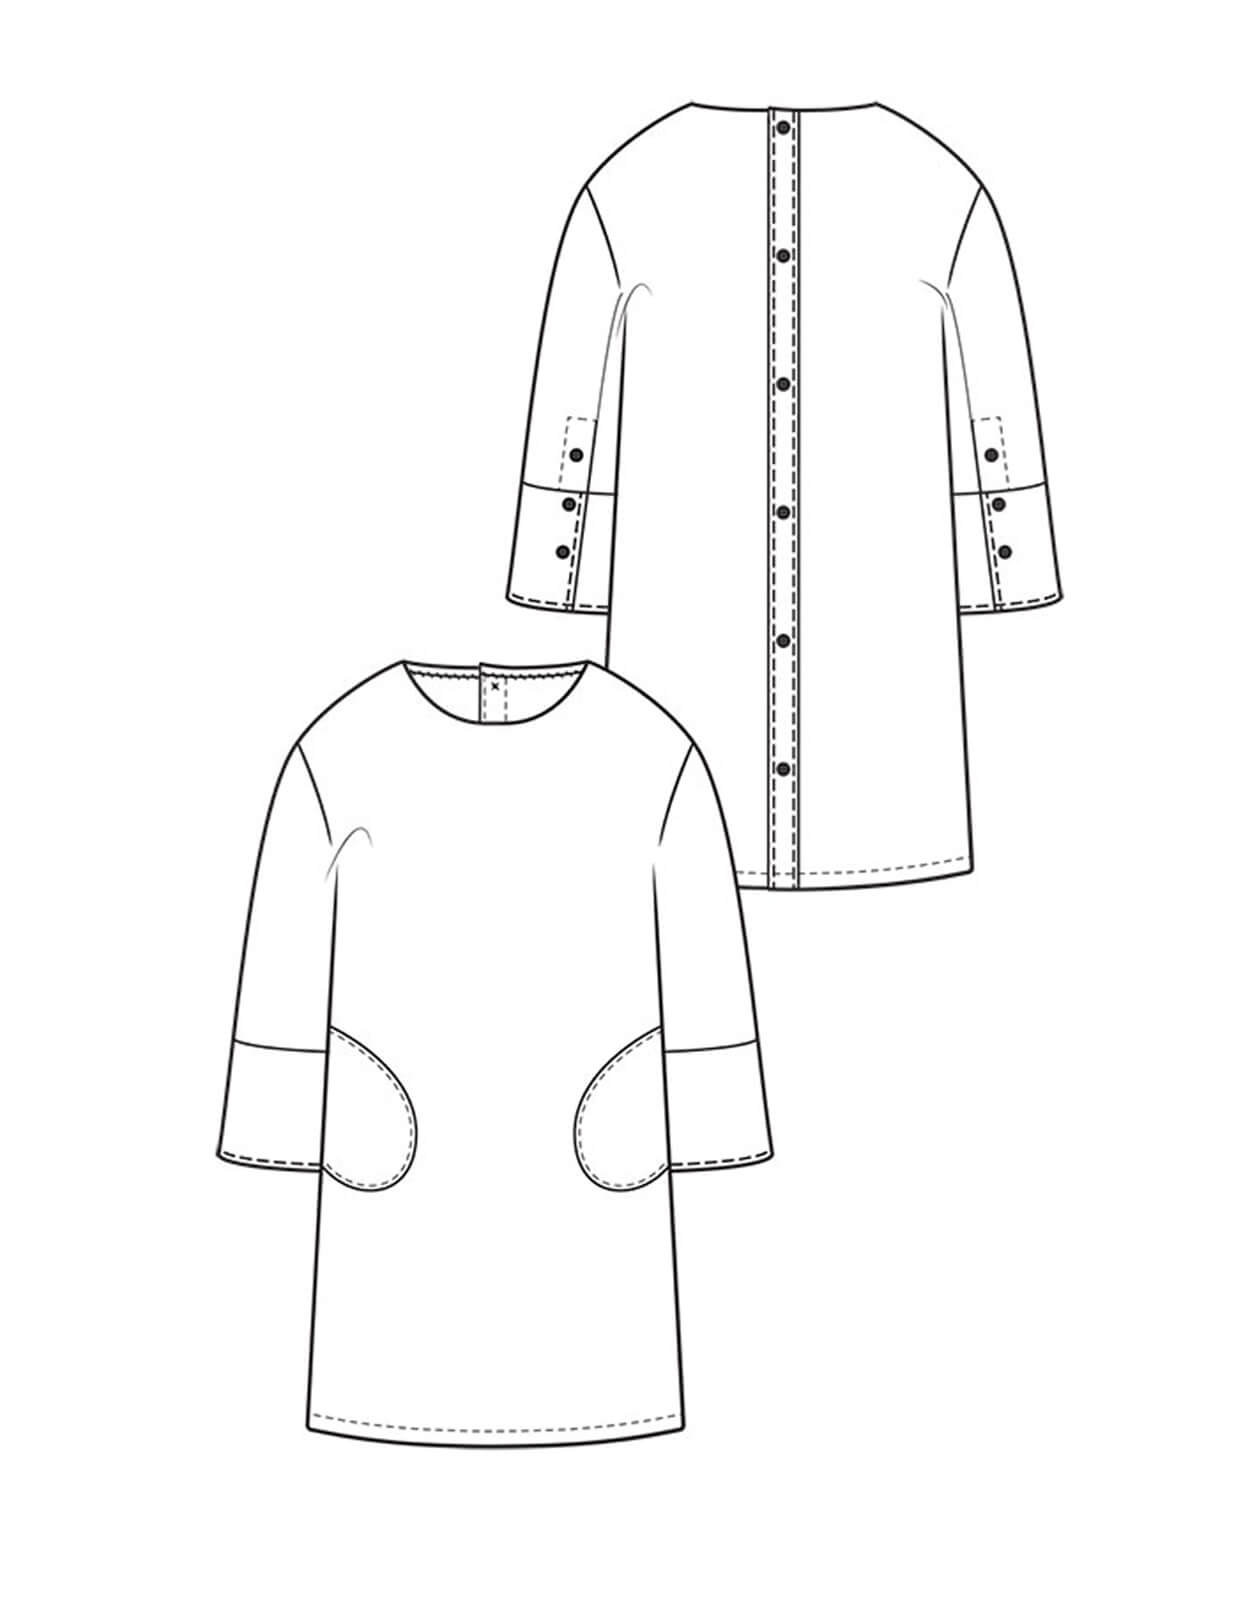 The Maker's Atelier Keira Fogden Dress